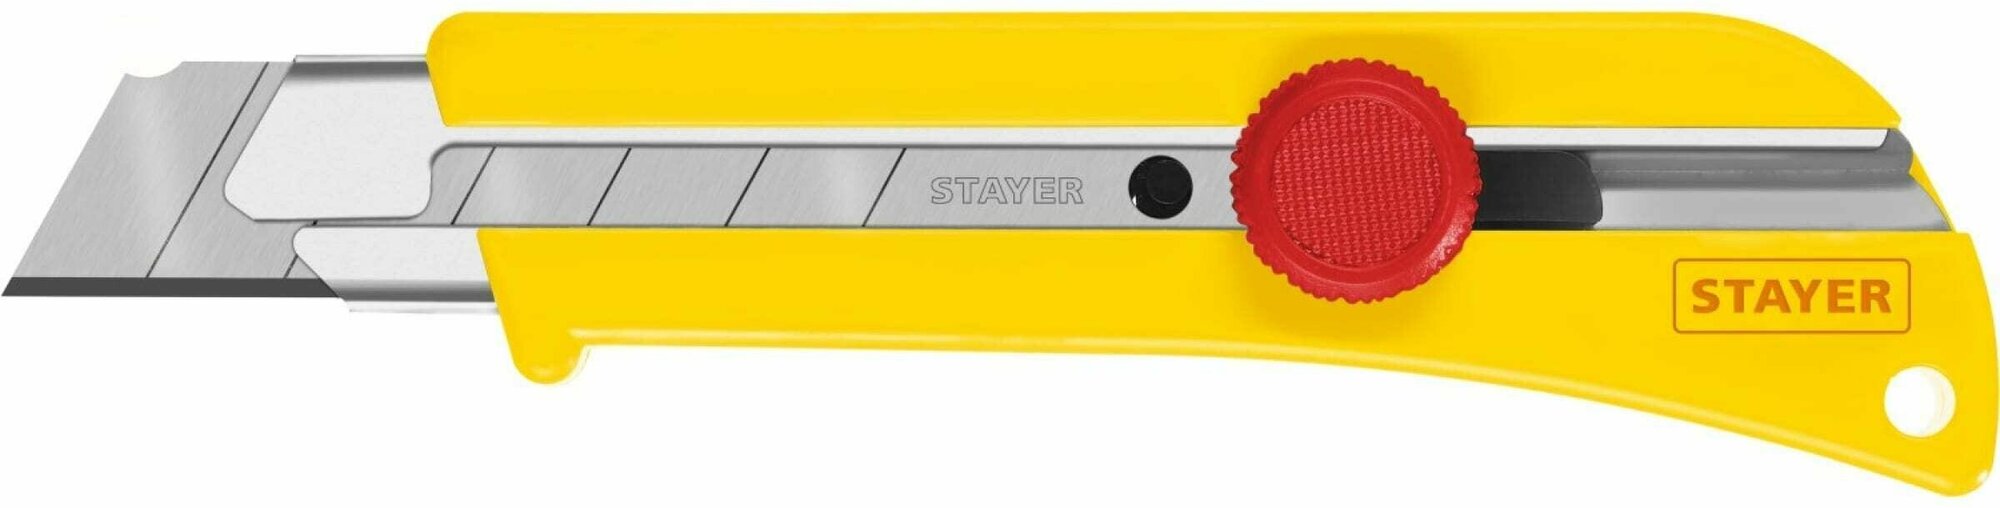 Нож с винтовым фиксатором Stayer SK-25, 09173_z01 сегментированные лезвия 25 мм, усиленный корпус